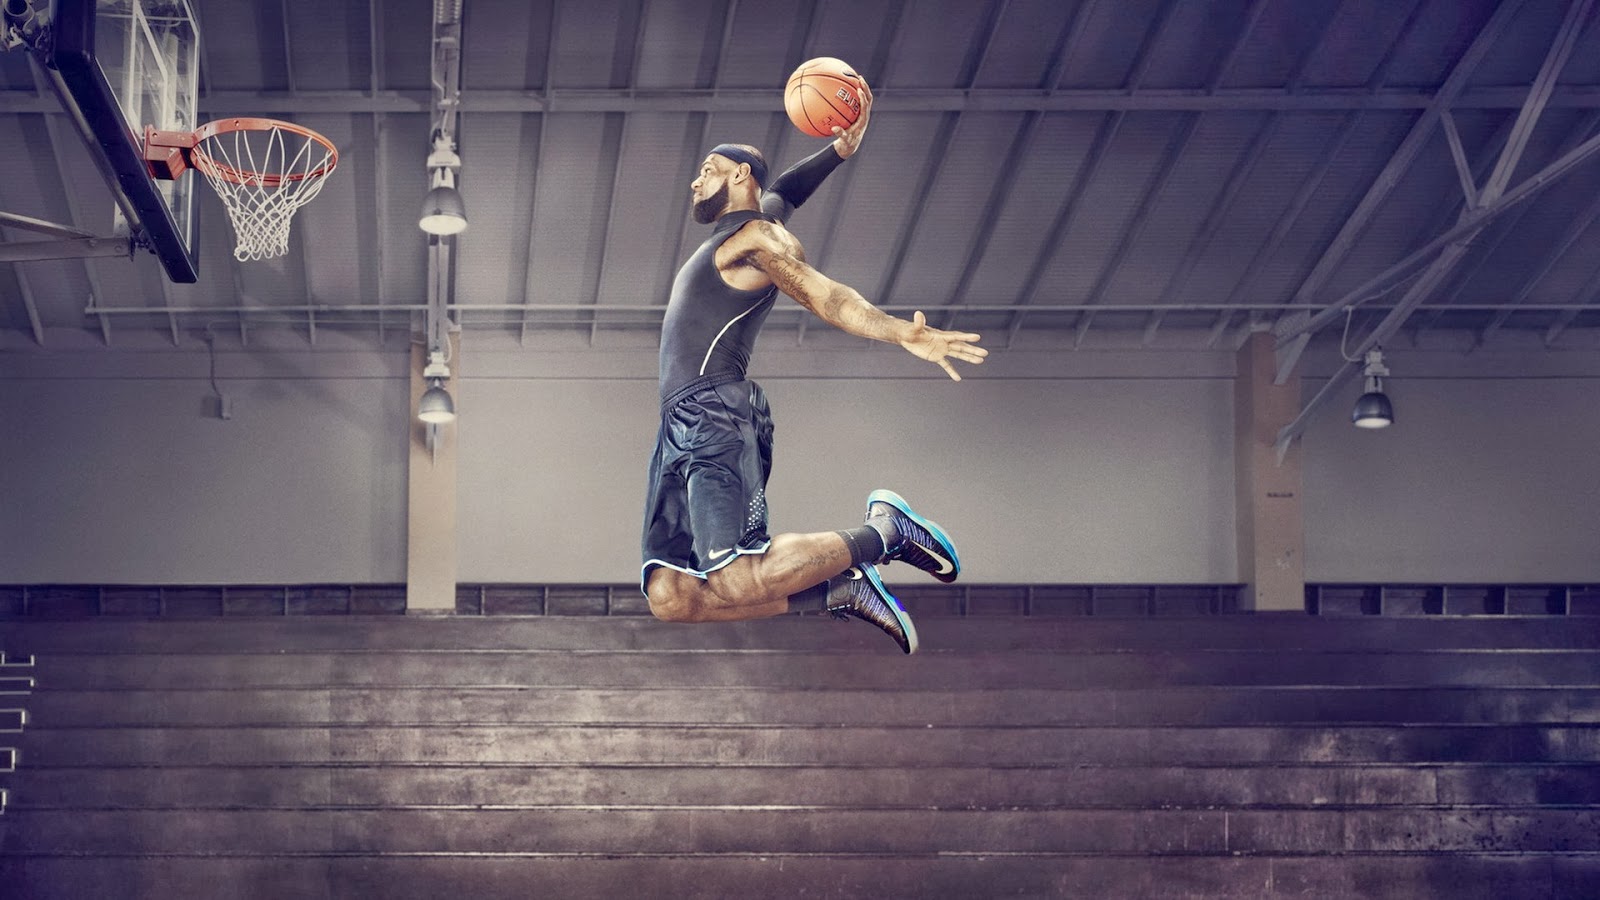 nuevo fondo de pantalla 2014,movimientos de baloncesto,jugador de baloncesto,baloncesto,fútbol estilo libre,clavada